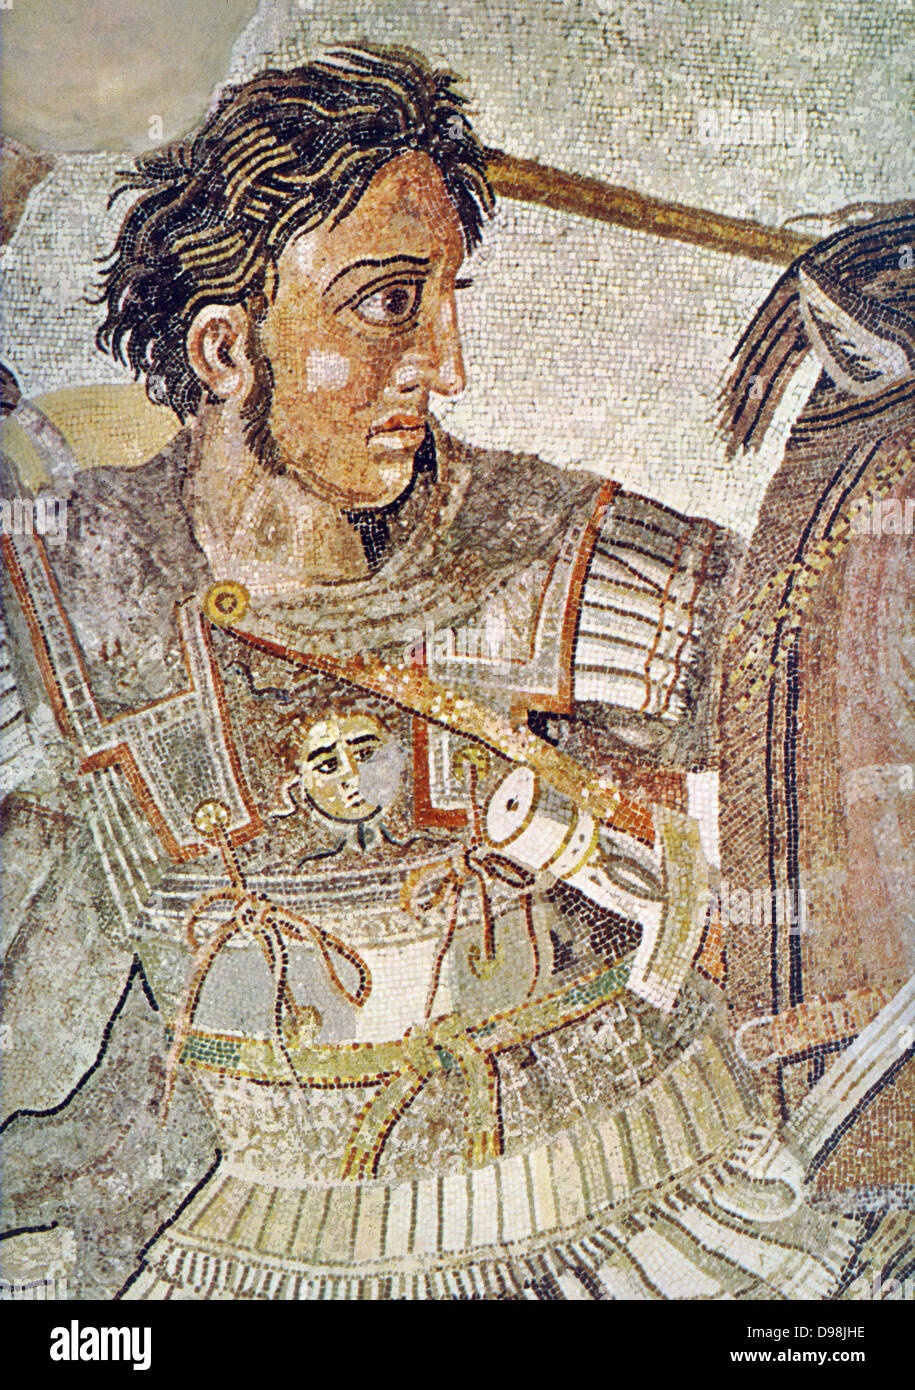 Die Alexander Mosaik, dating von ca. 100 v. Chr., ist ein berühmtes römisches Fußbodenmosaik, die ursprünglich aus dem Haus des Faun in Pompeji. Es zeigt einen Kampf zwischen den Armeen von Alexander dem Großen und Darius III. von Persien und Maßnahmen 5.82 x 3.13 m (19 ft x 10 ft 3 in.). Das Mosaik zeigt eine Schlacht, in der Alexander konfrontiert und versuchten zu erfassen oder Darius töten. Alexander besiegt den persischen Führer zweimal, zuerst an der 333 v. Chr. Schlacht bei Issus und zwei Jahre später in der Schlacht von gaugamela. Die Arbeit ist traditionell geglaubt, der Schlacht von Issus zu zeigen. Detail Alexander angezeigt Stockfoto